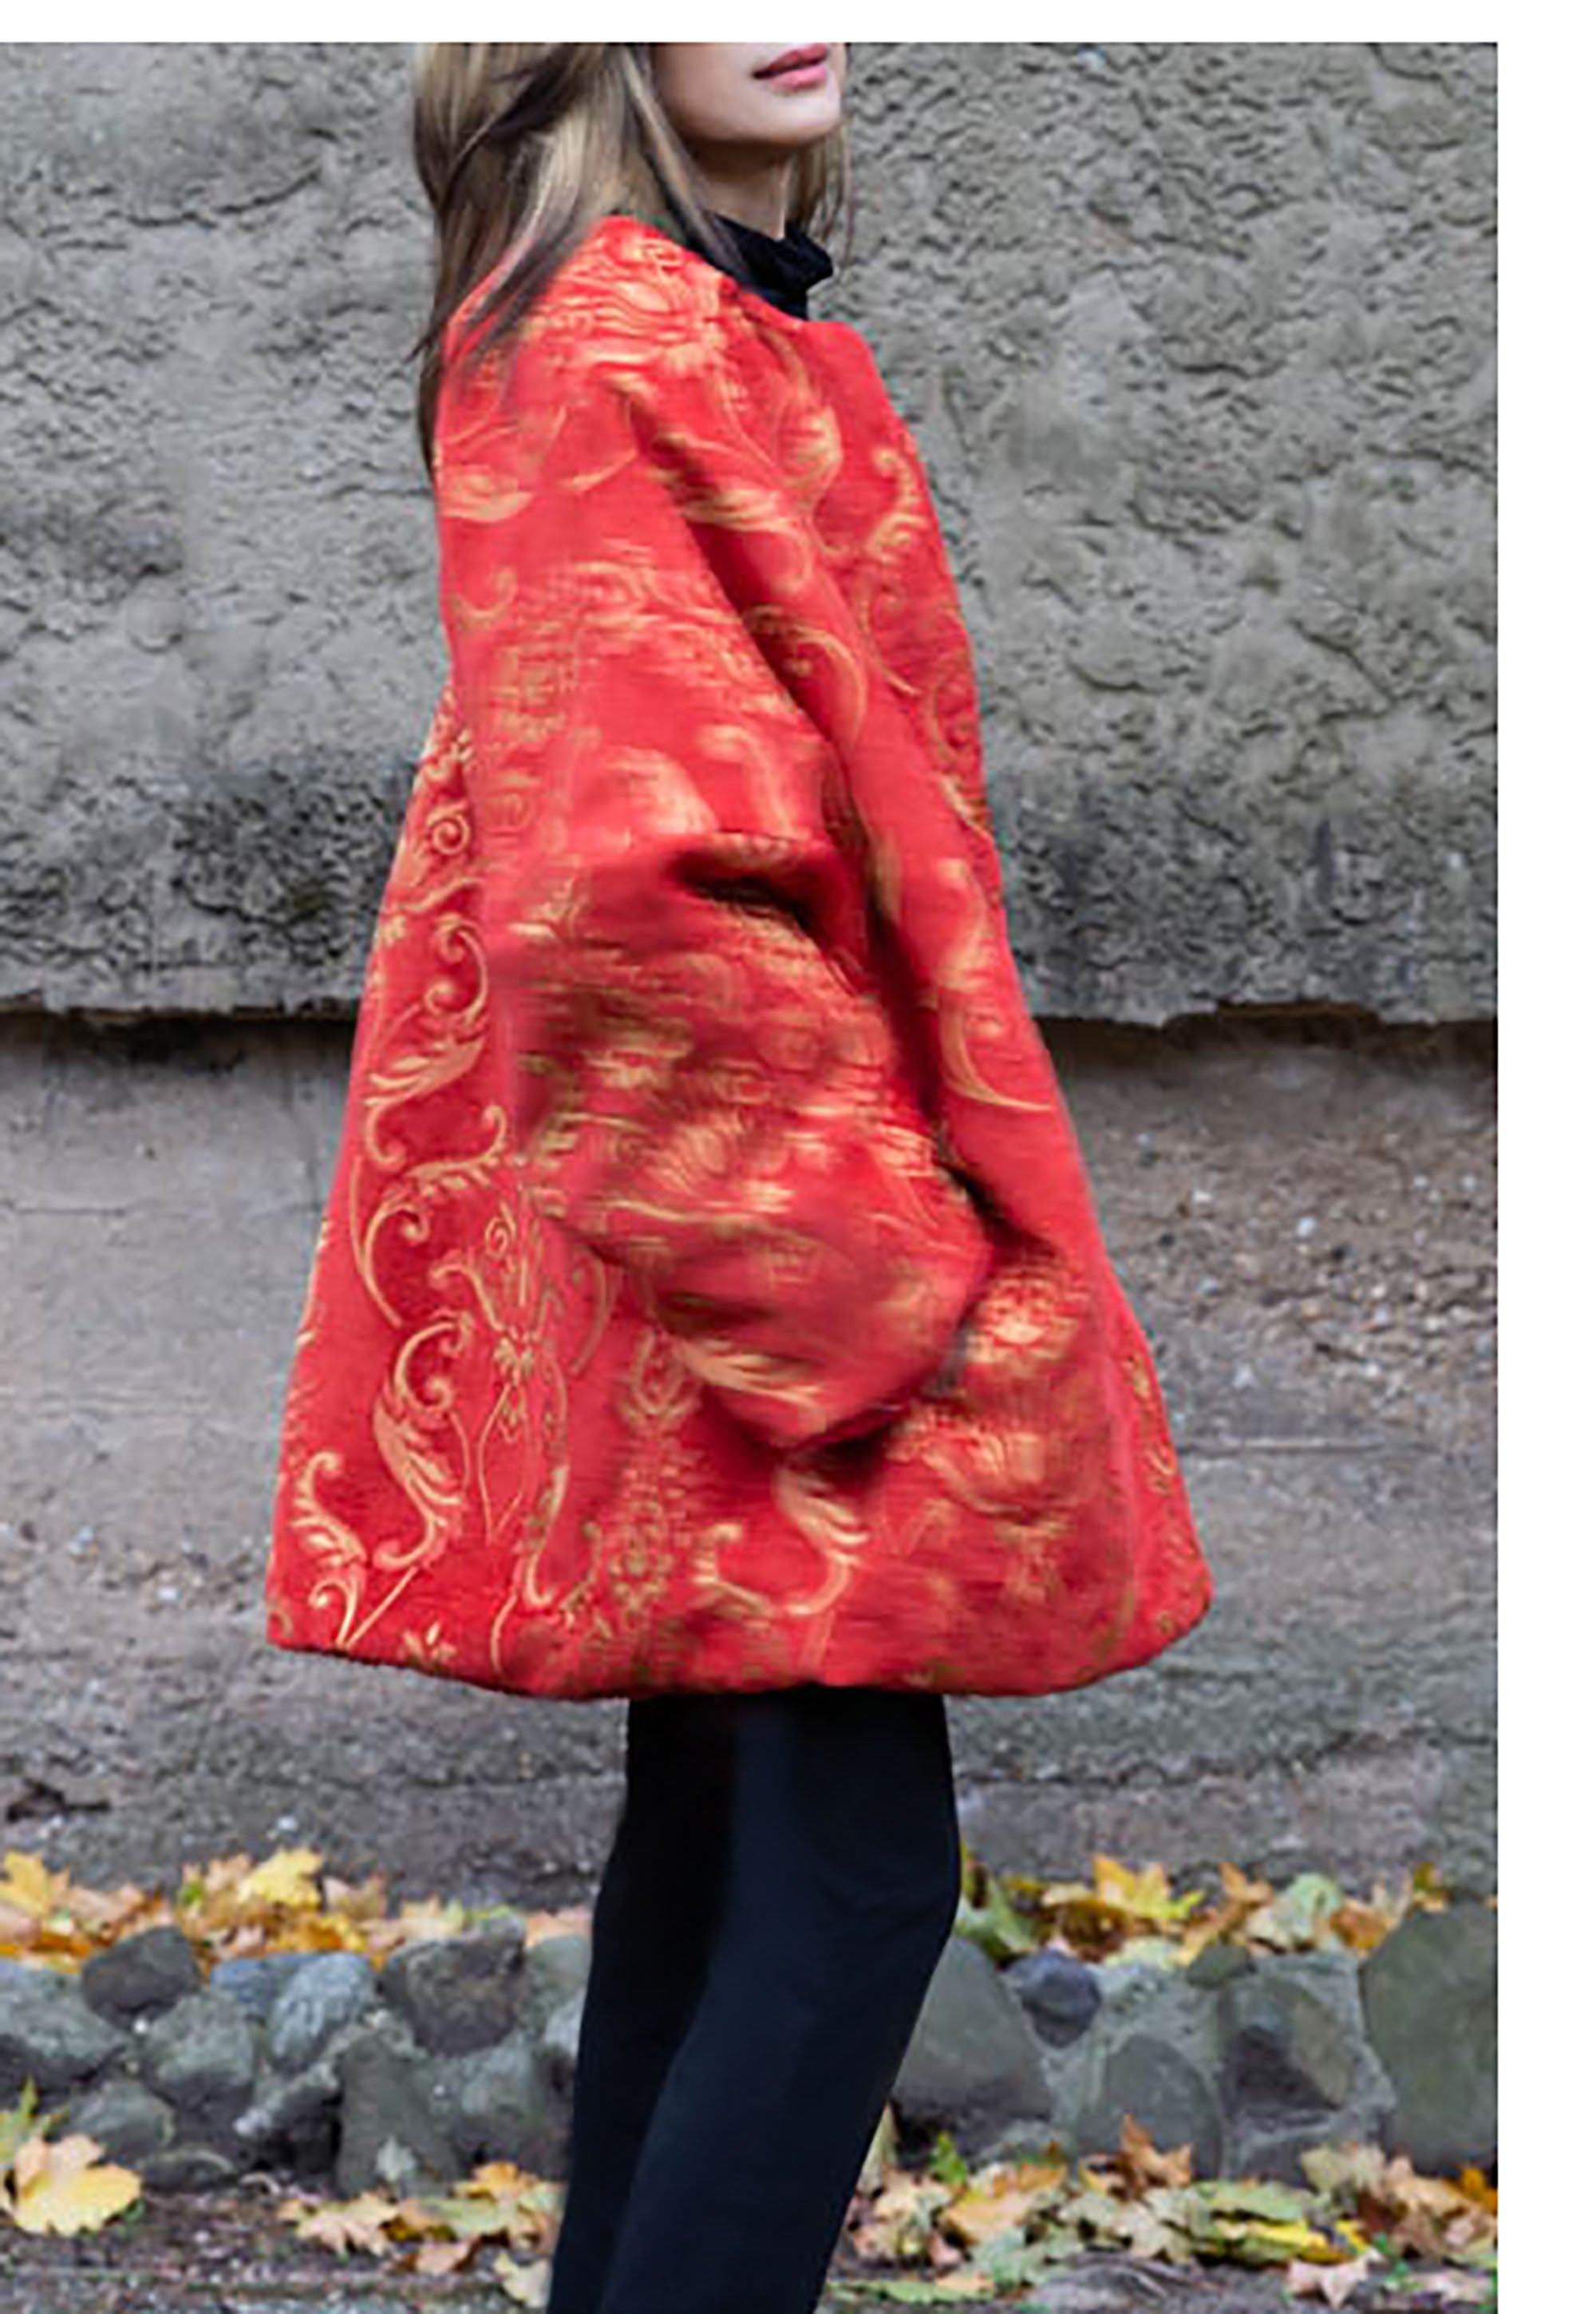 Loose Reversible Coat/ Reversible Oversized Coat/ Red Faux Fur Coat with Ikat Print